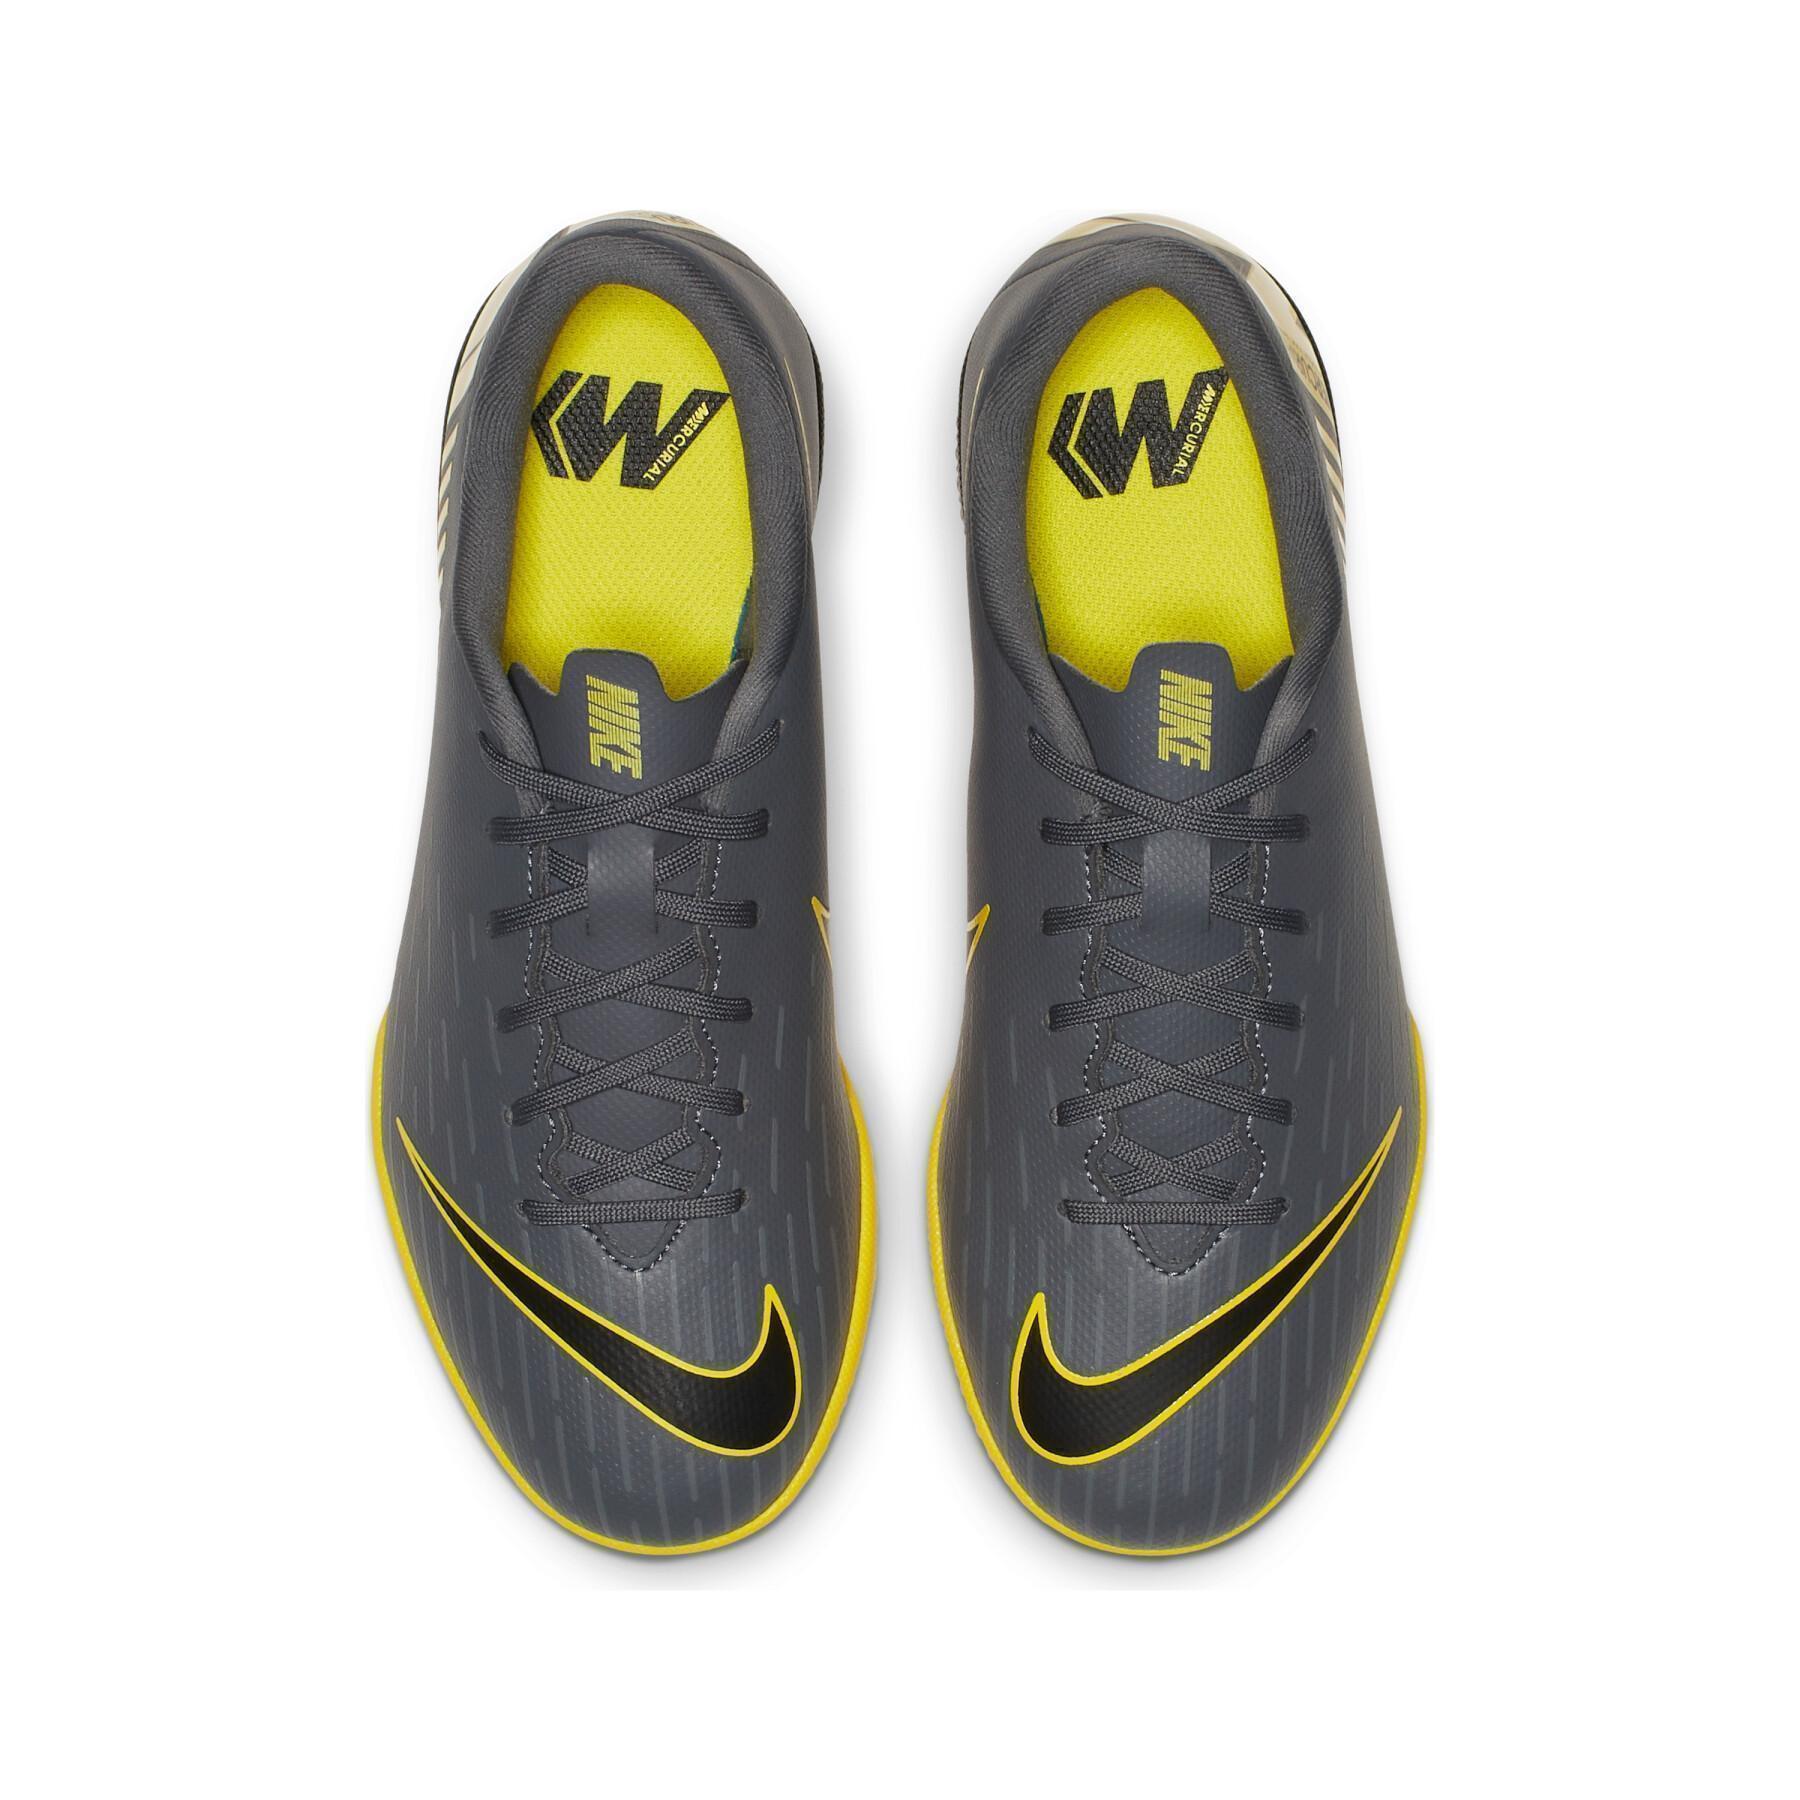 Kinderschoenen Nike Mercurial VaporX 12 Academy IN